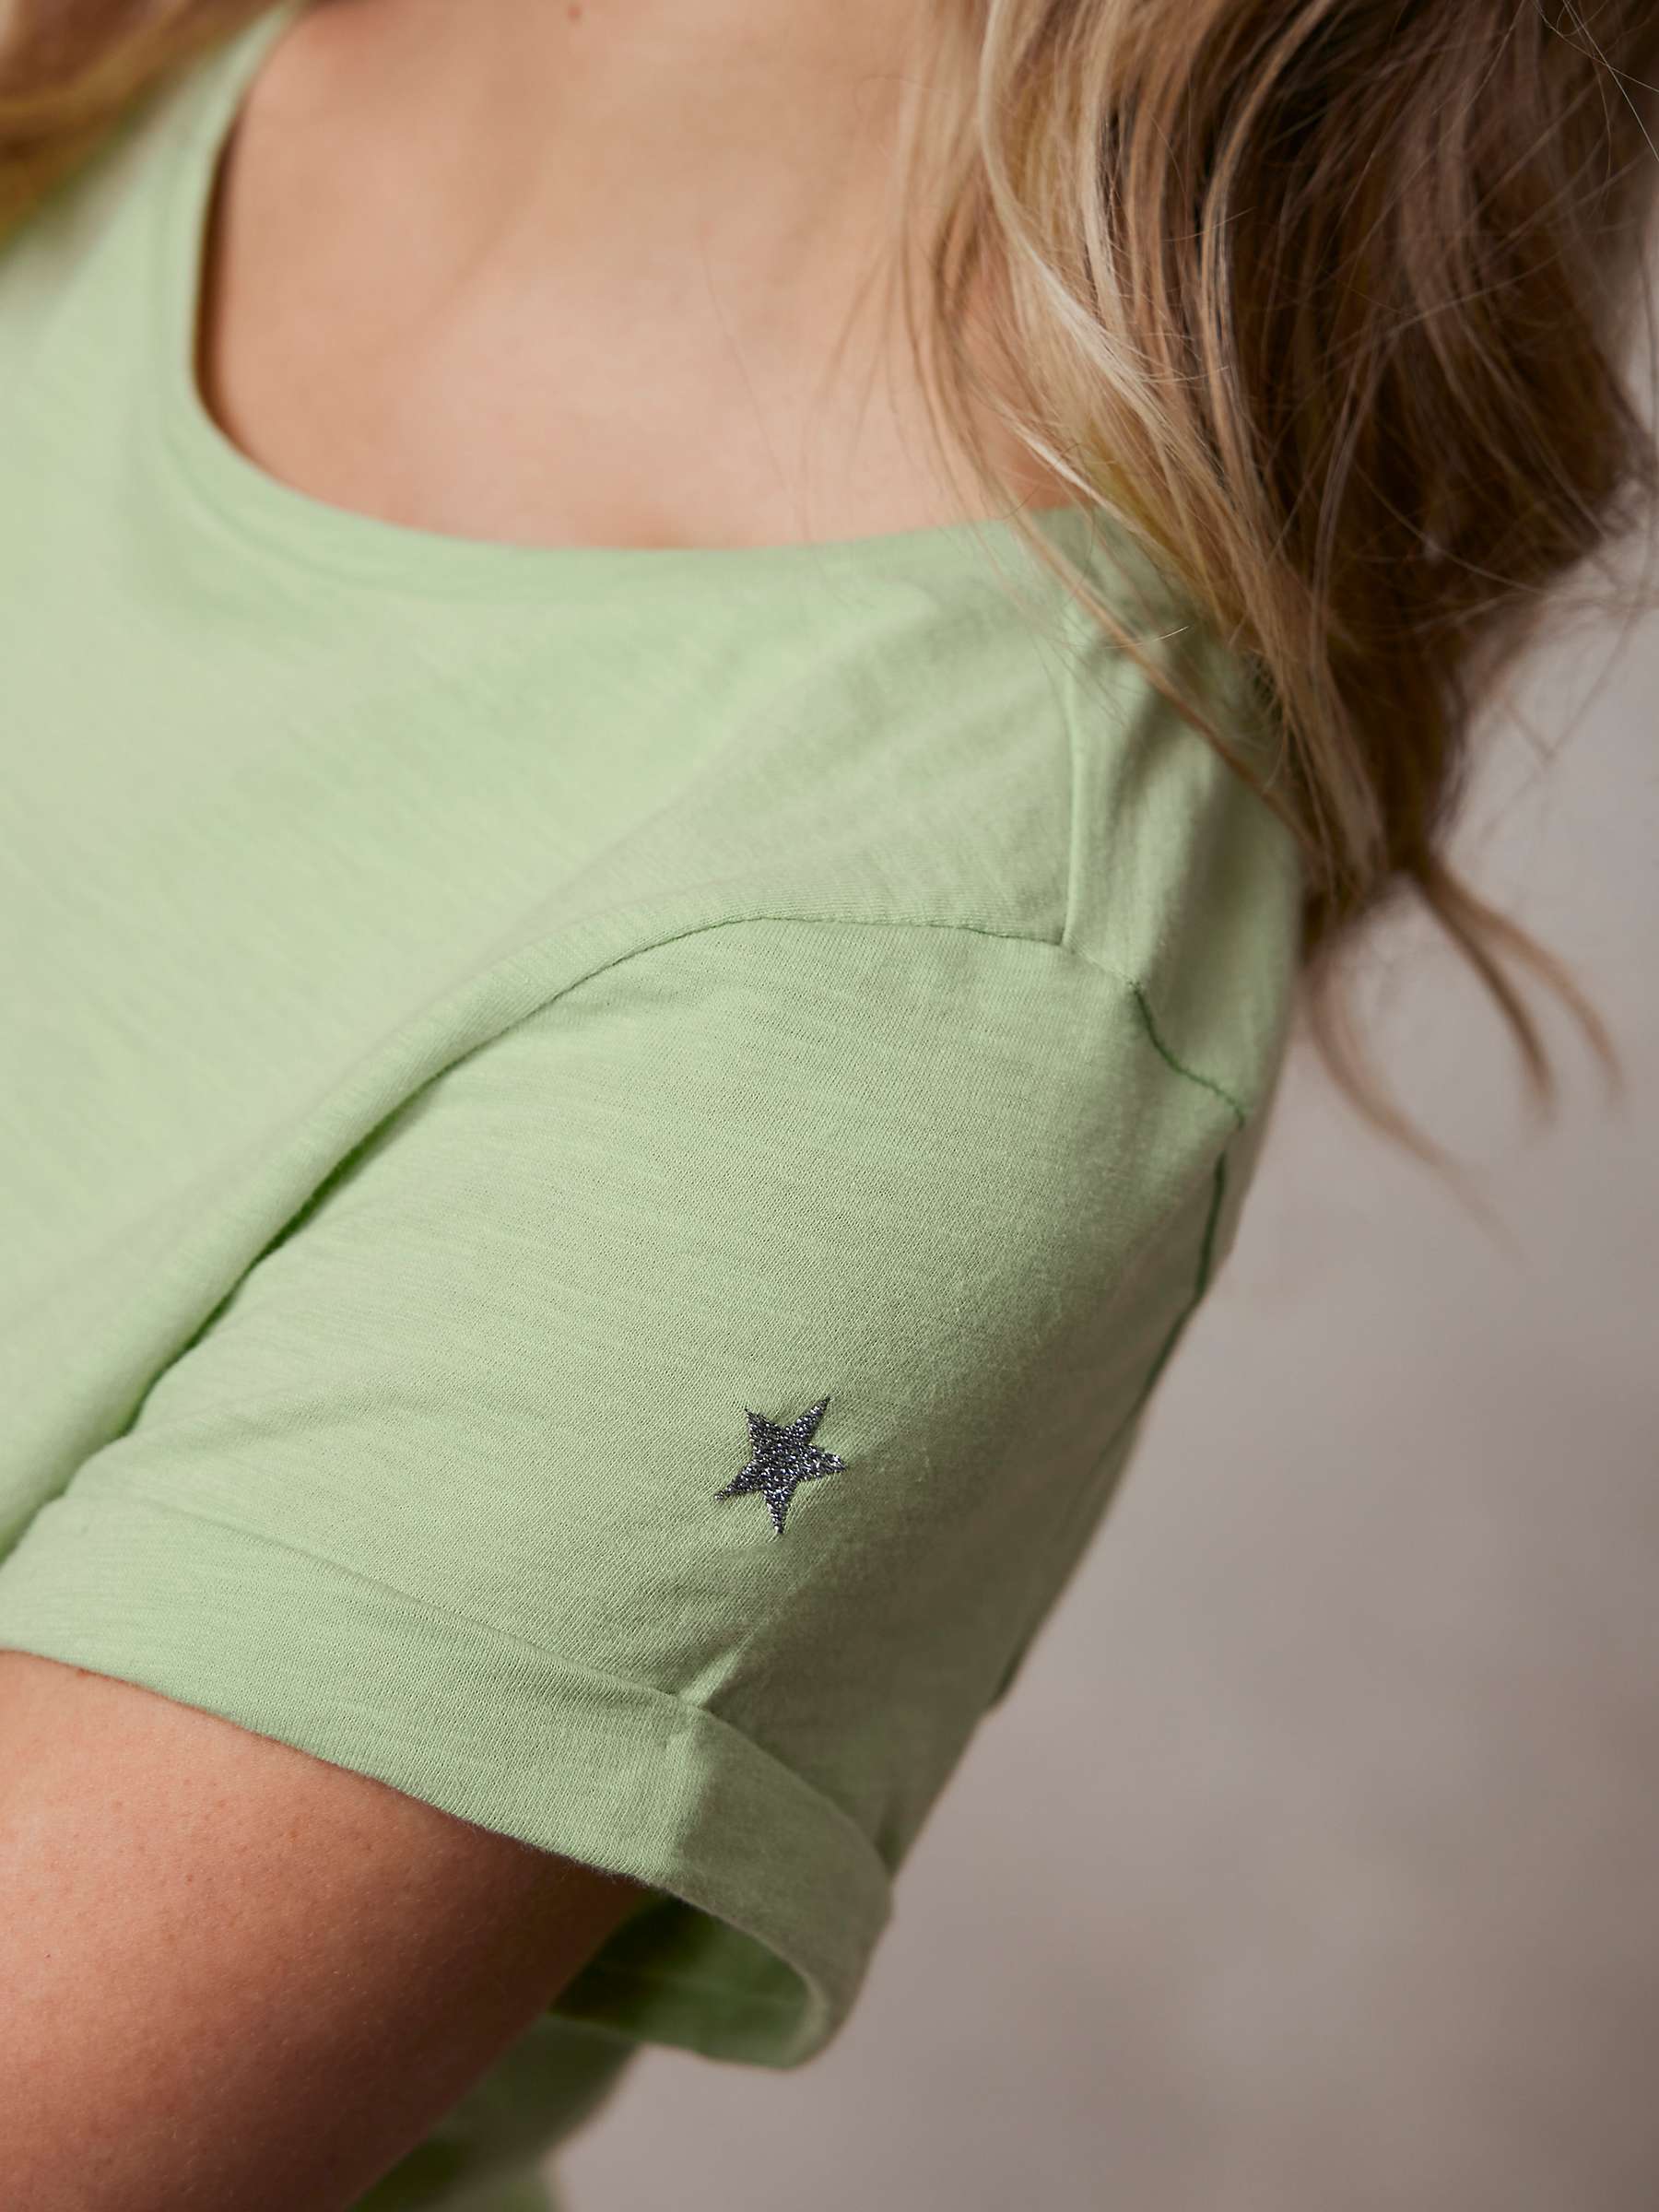 Buy Mint Velvet Cotton Star T-Shirt, Green Online at johnlewis.com